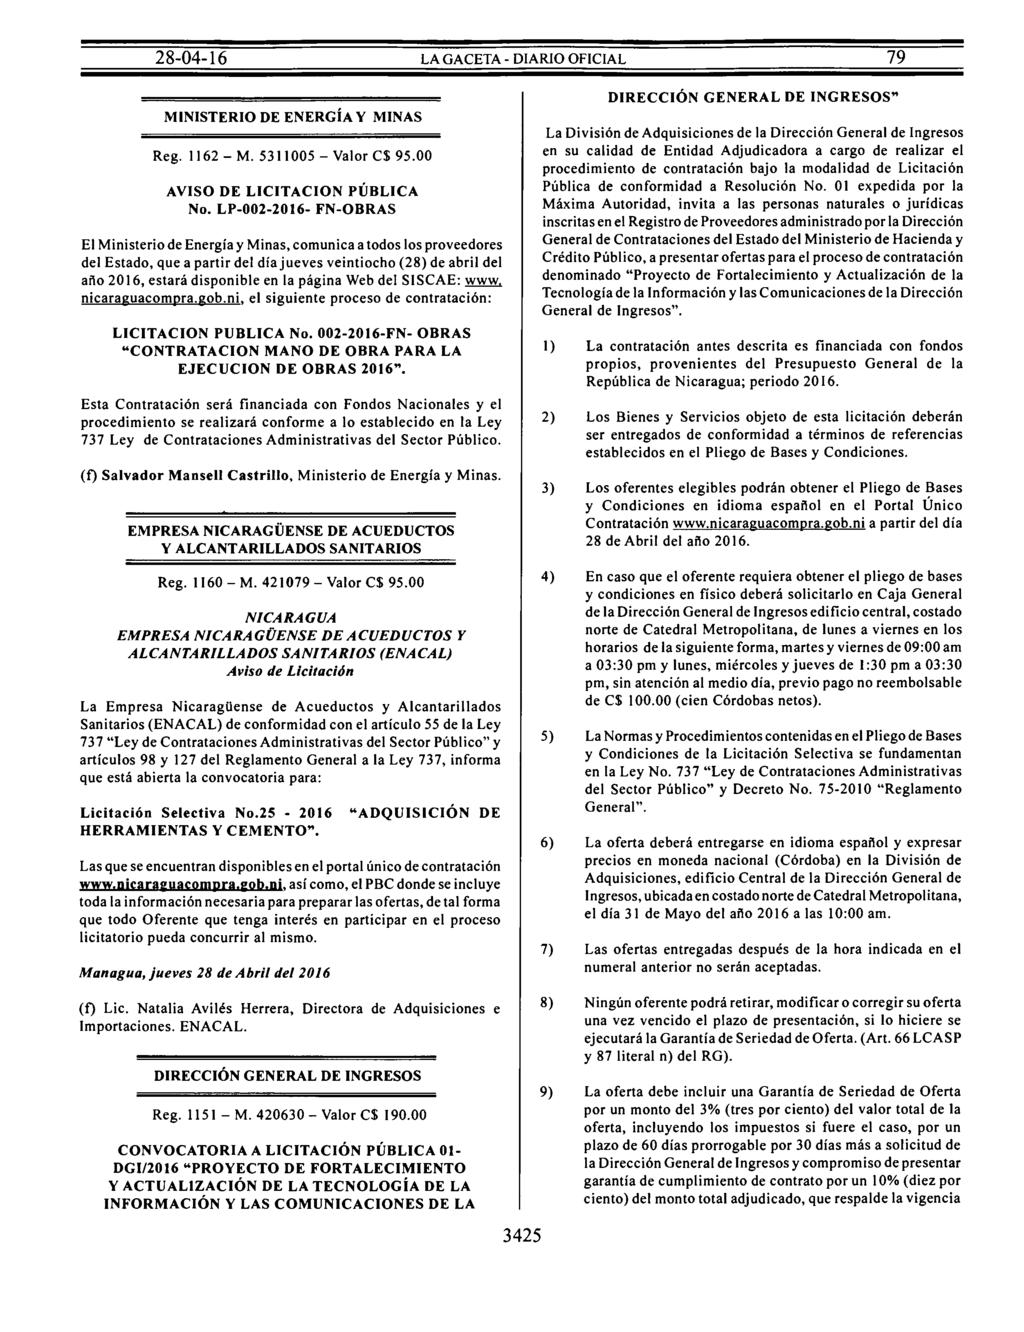 MINISTERIO DE ENERGÍA Y MINAS Reg. 1162- M. 5311005 -Valor C$ 95.00 AVISO DE LICITACION PÚBLICA No.